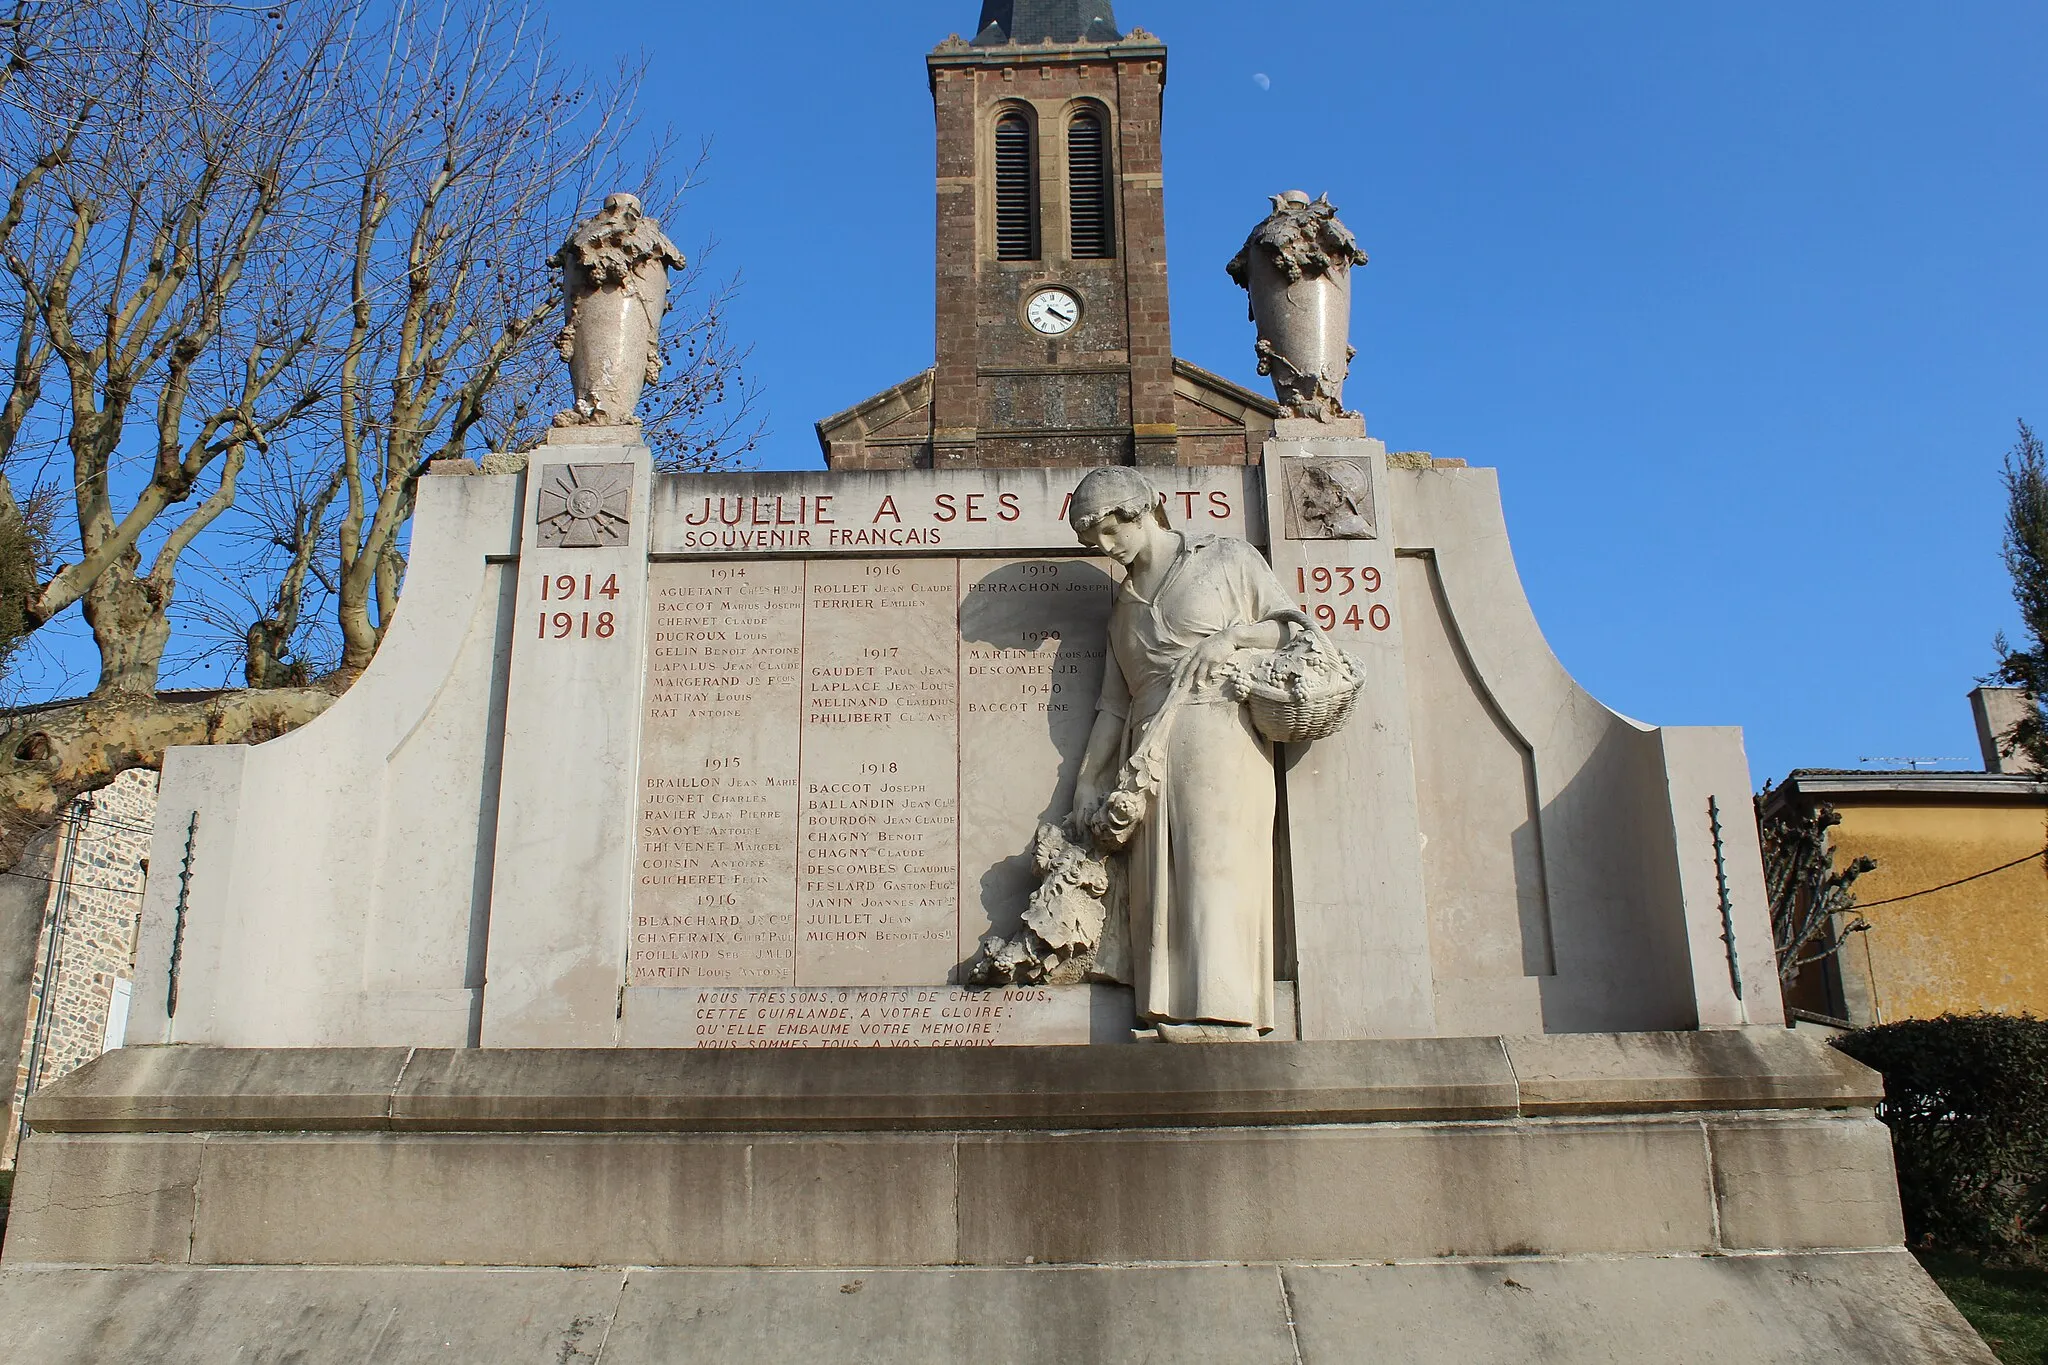 Photo showing: Monument aux morts de Jullié.